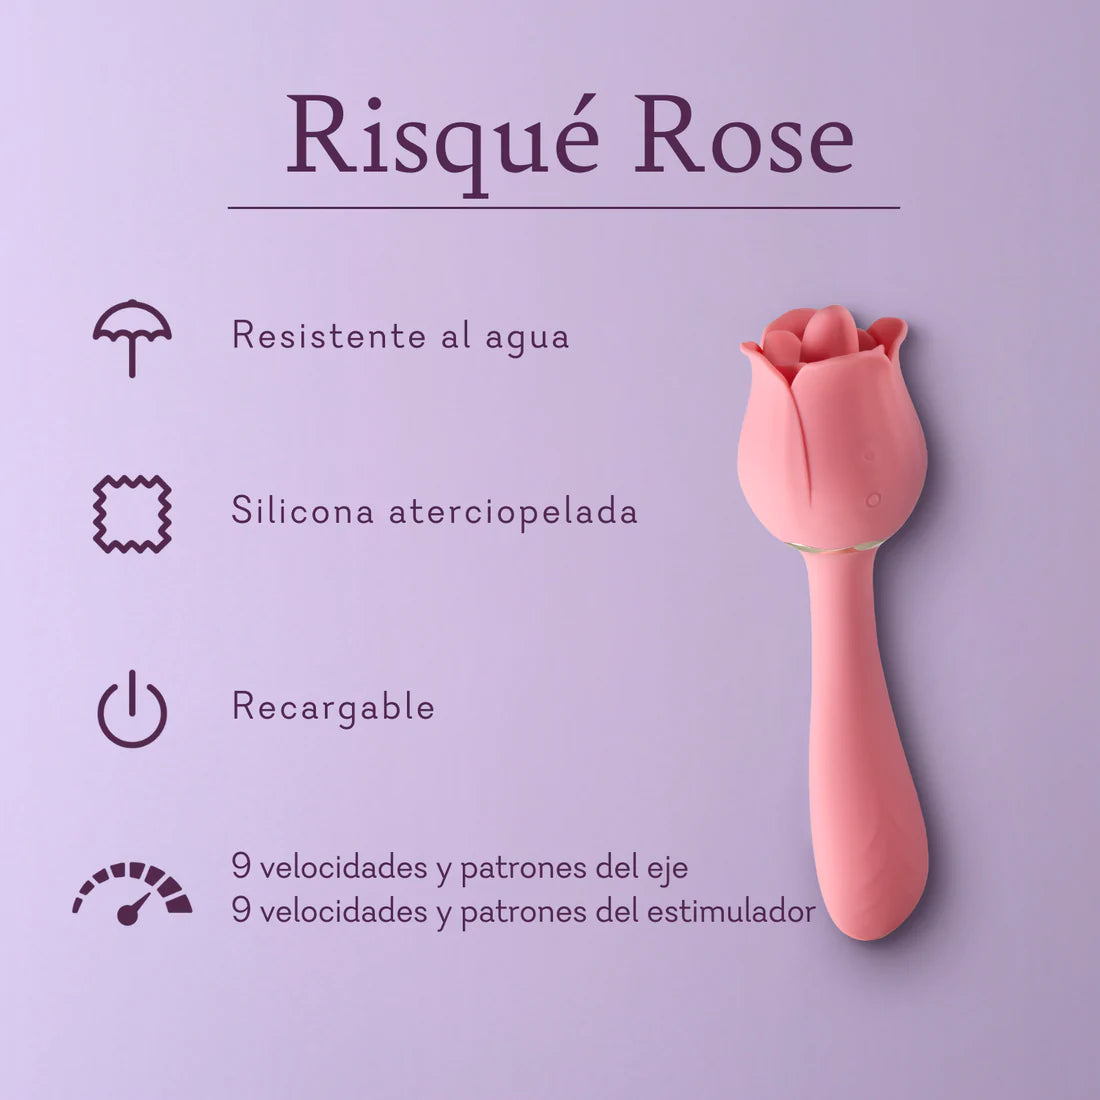 Risque Rose